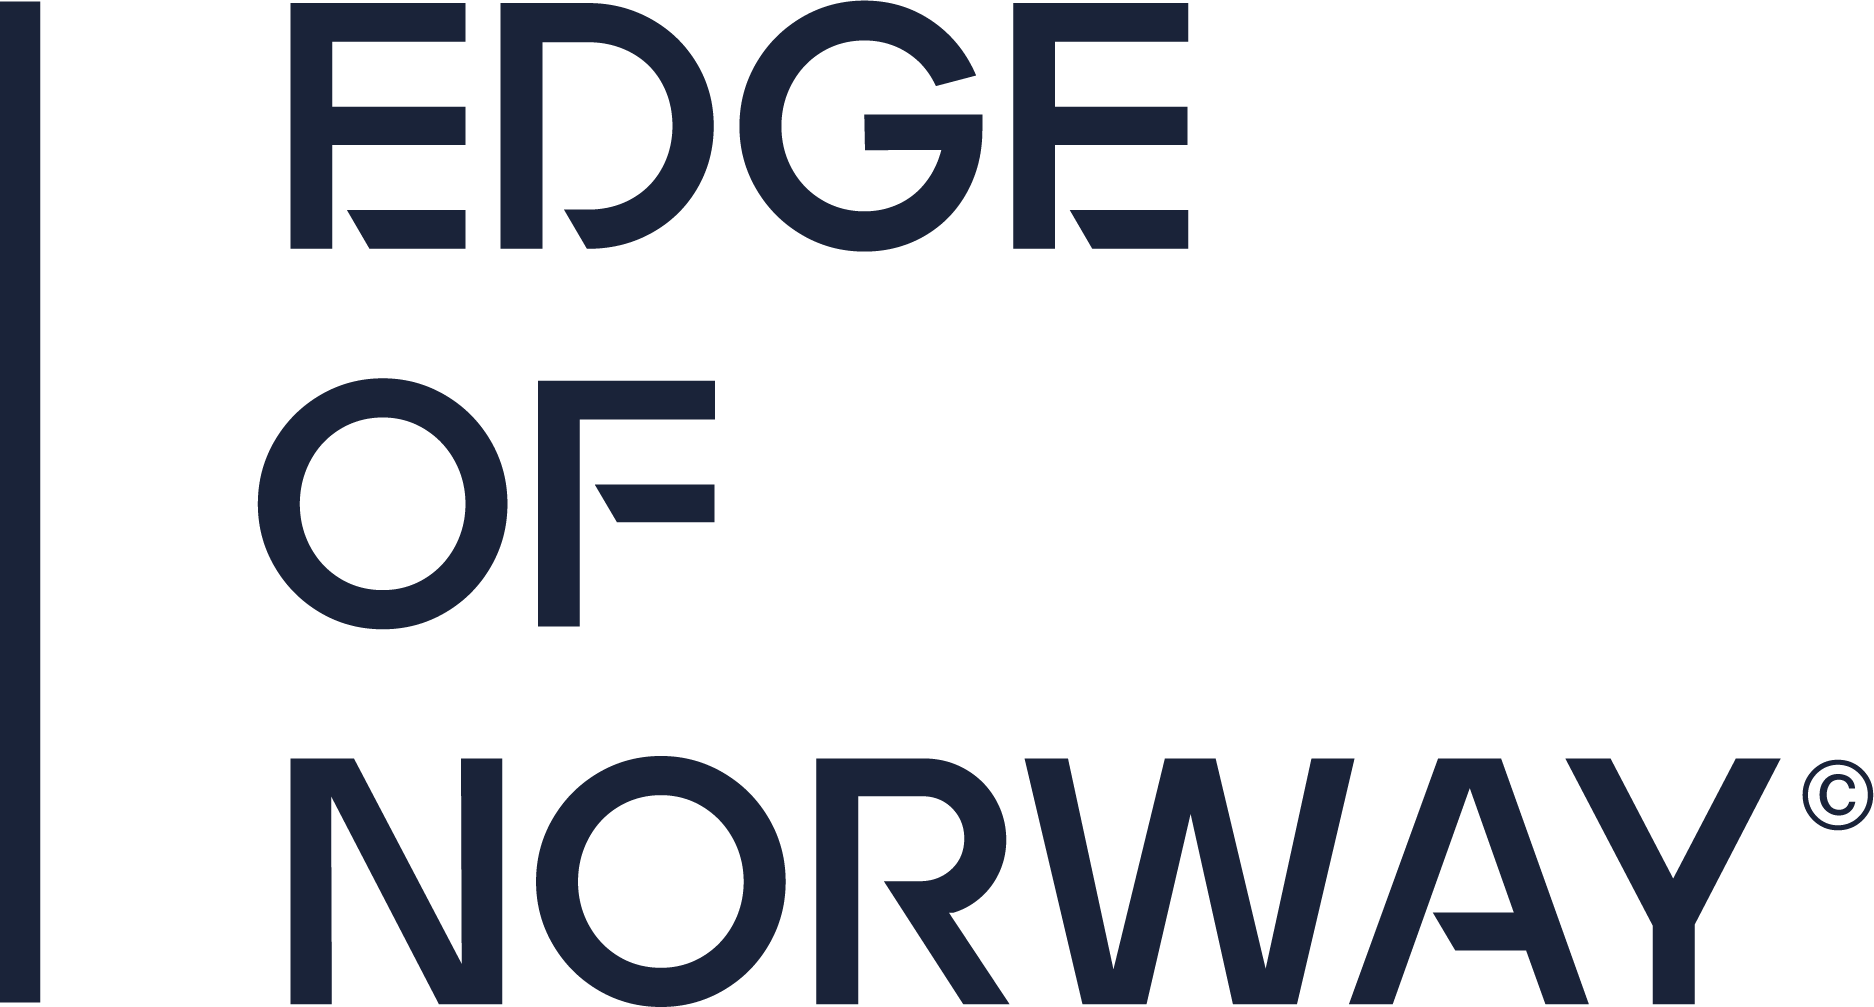 Stavanger's primary logo